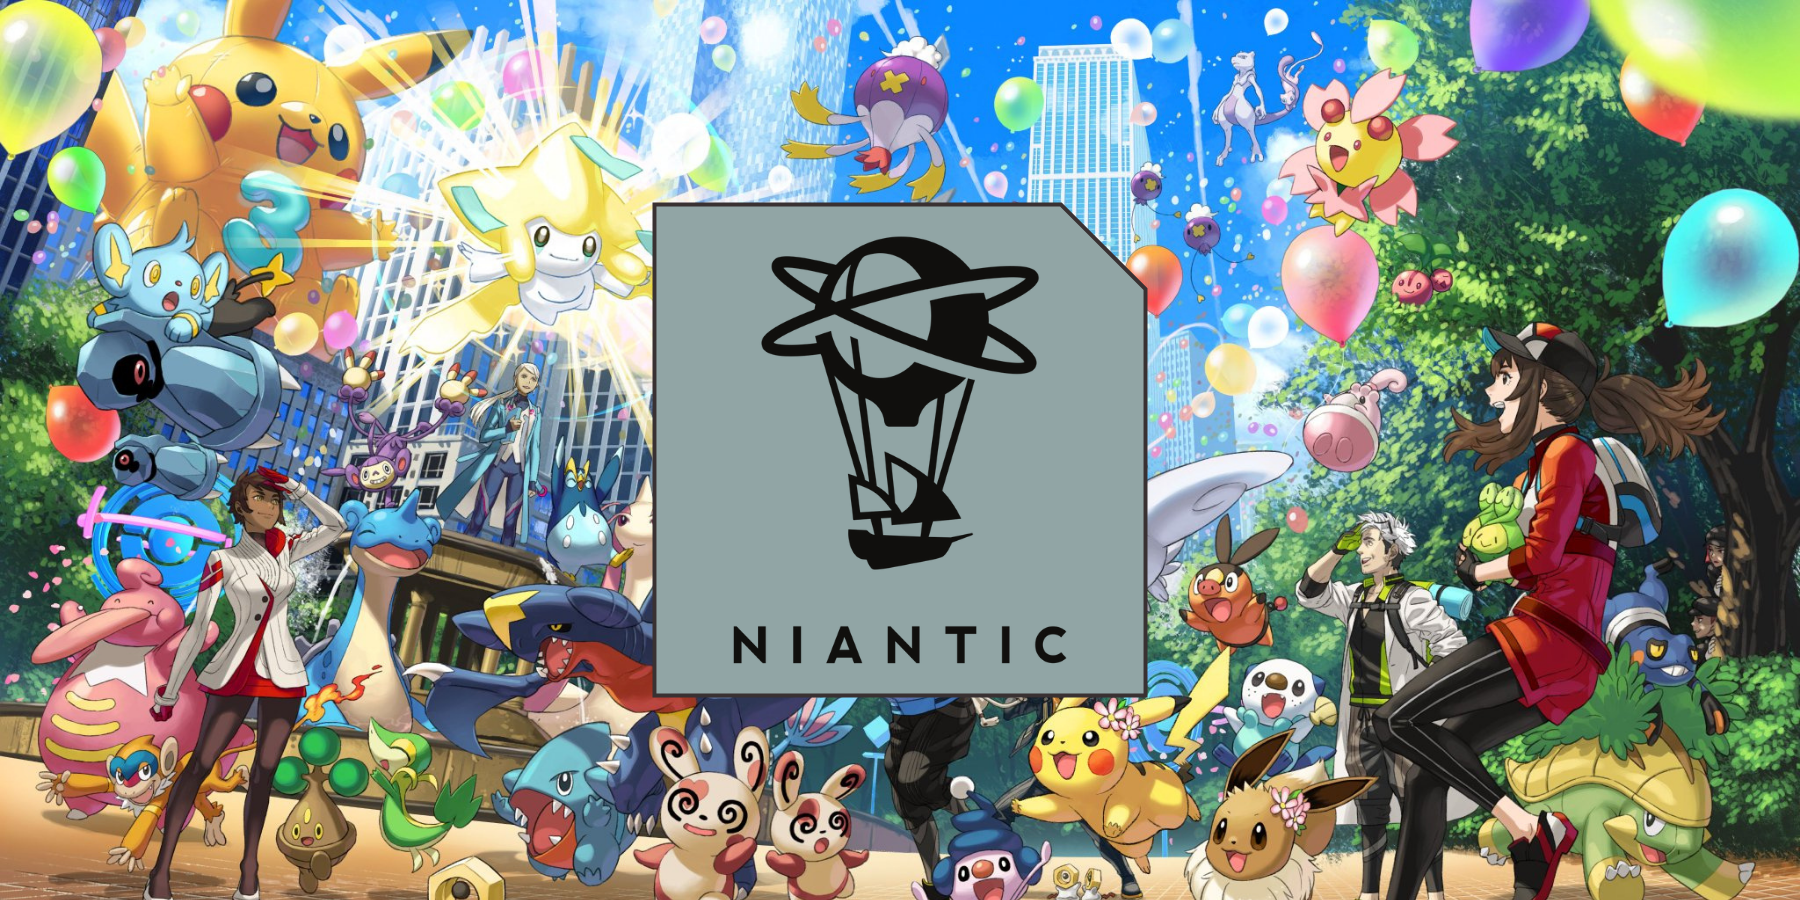 Niantic vyžaduje, aby uchazeči o zaměstnání byli Go Go Battle League Rank 7 nebo vyšší, aby mohli pracovat na Pokemon GO